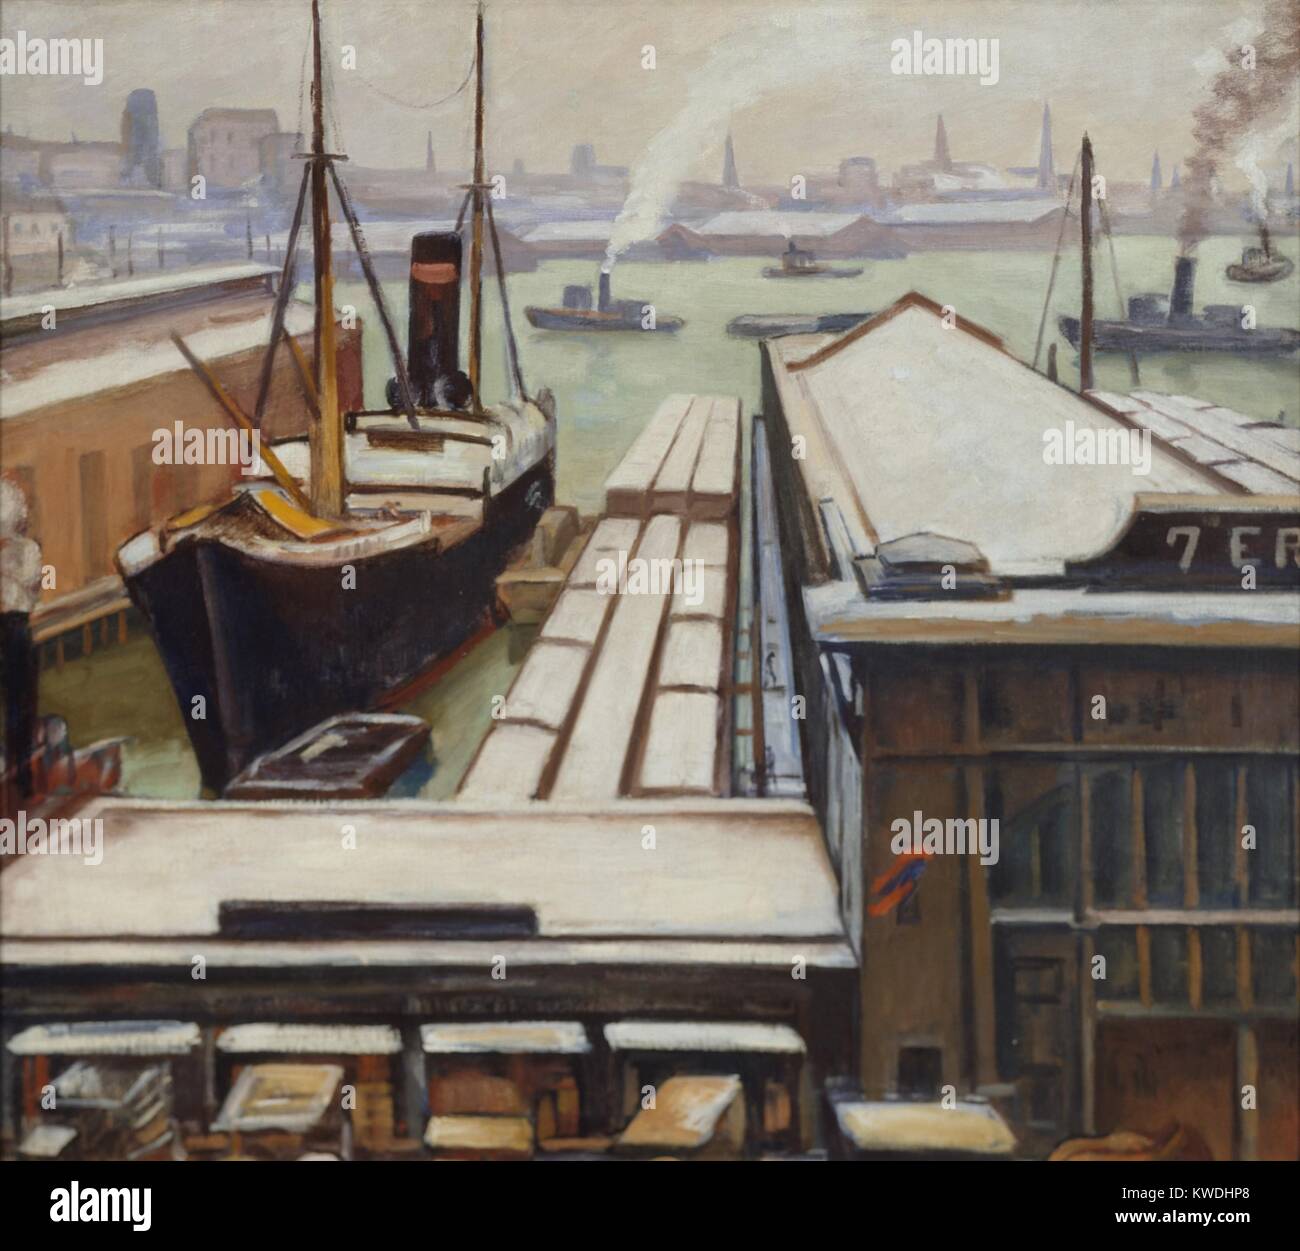 EAST RIVER, par Samuel Halpert, 1913-1914, American peinture, huile sur toile. Cette scène portuaire stylisé est peint avec linéaire emphatique et perspective atmosphérique dans lequel les formes sont peints avec la planéité (BSLOC_simplifié 2017_7_114) Banque D'Images